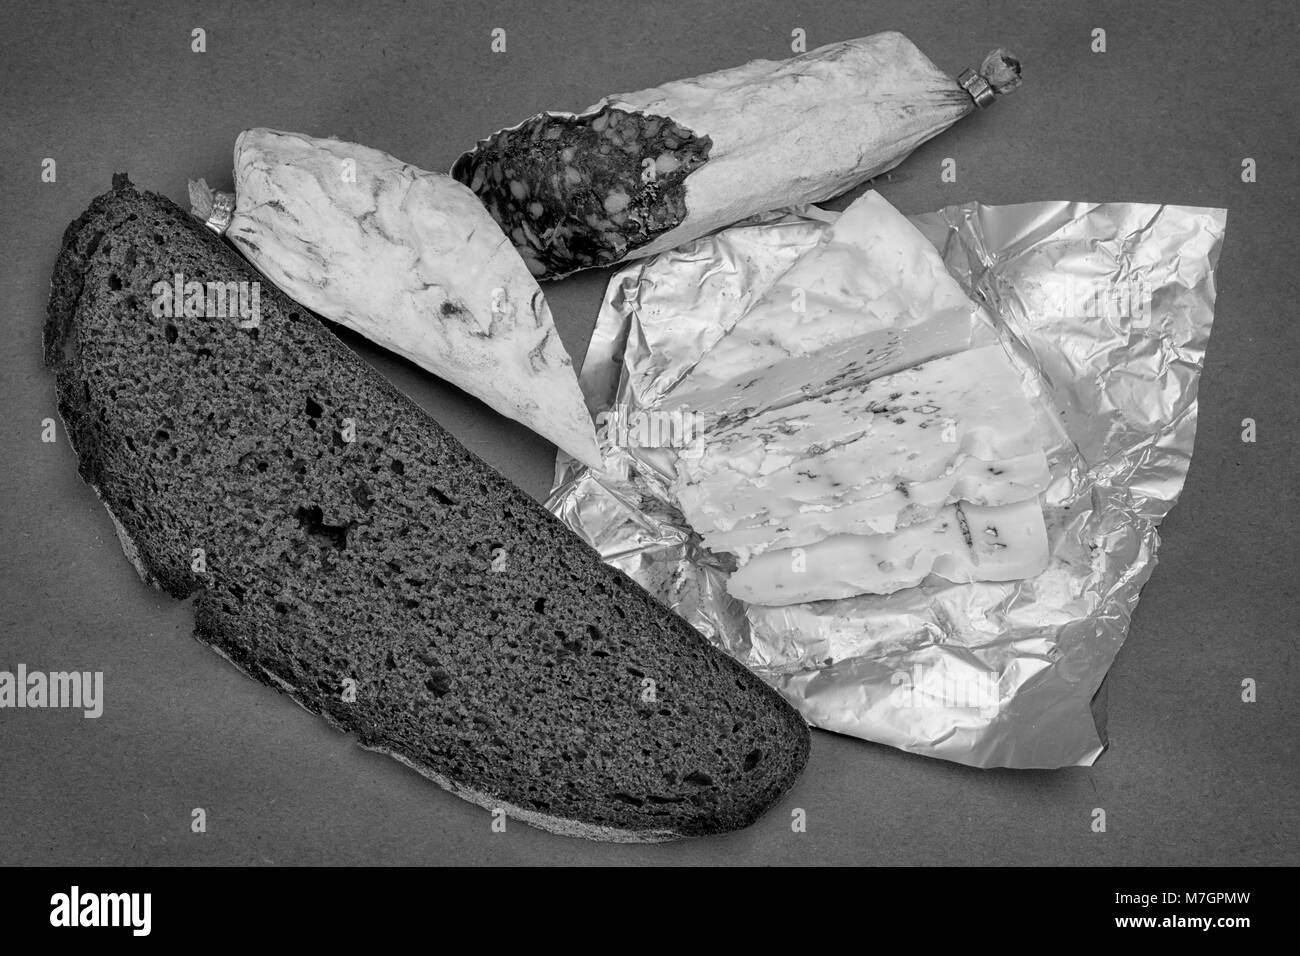 Thème Le petit déjeuner nature morte. Pain, fromage Roquefort et saucisse fumée sur fond de papier craft. Photo en noir et blanc Banque D'Images